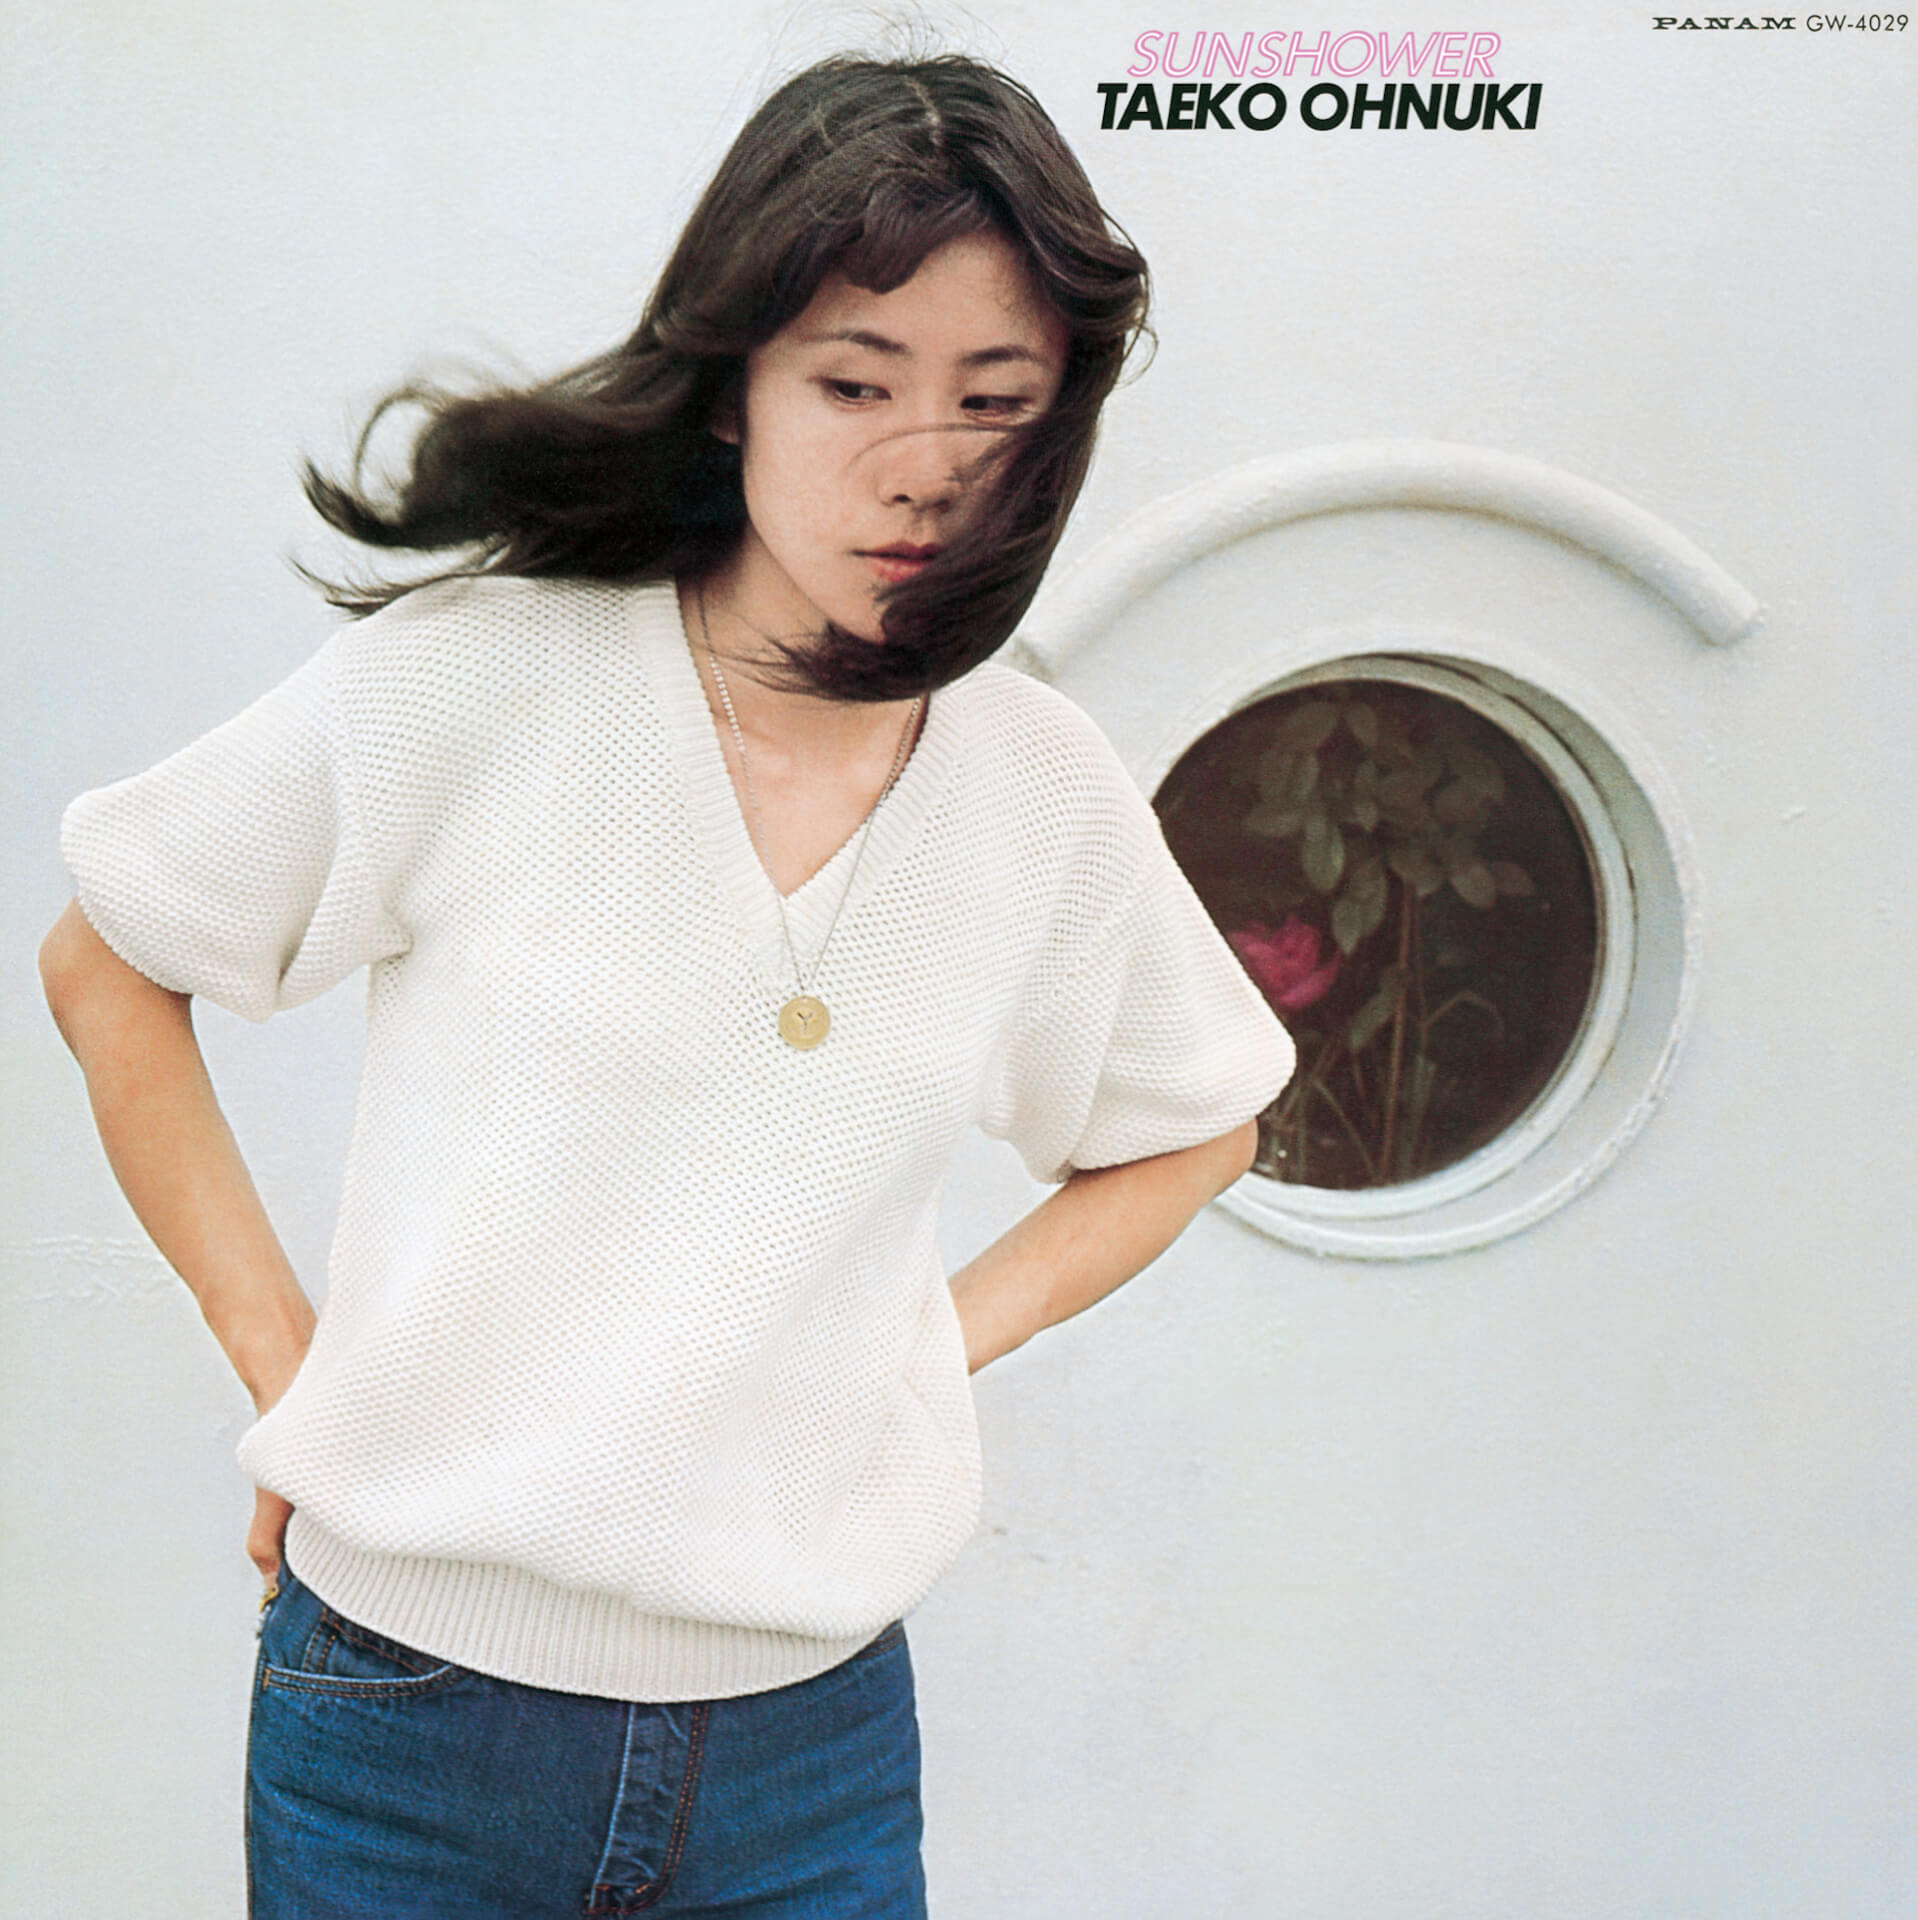 大貫妙子、1st アルバム『Grey Skies』と2ndアルバム『SUNSHOWER』が全世界配信へ music191001-onukitaeko-2